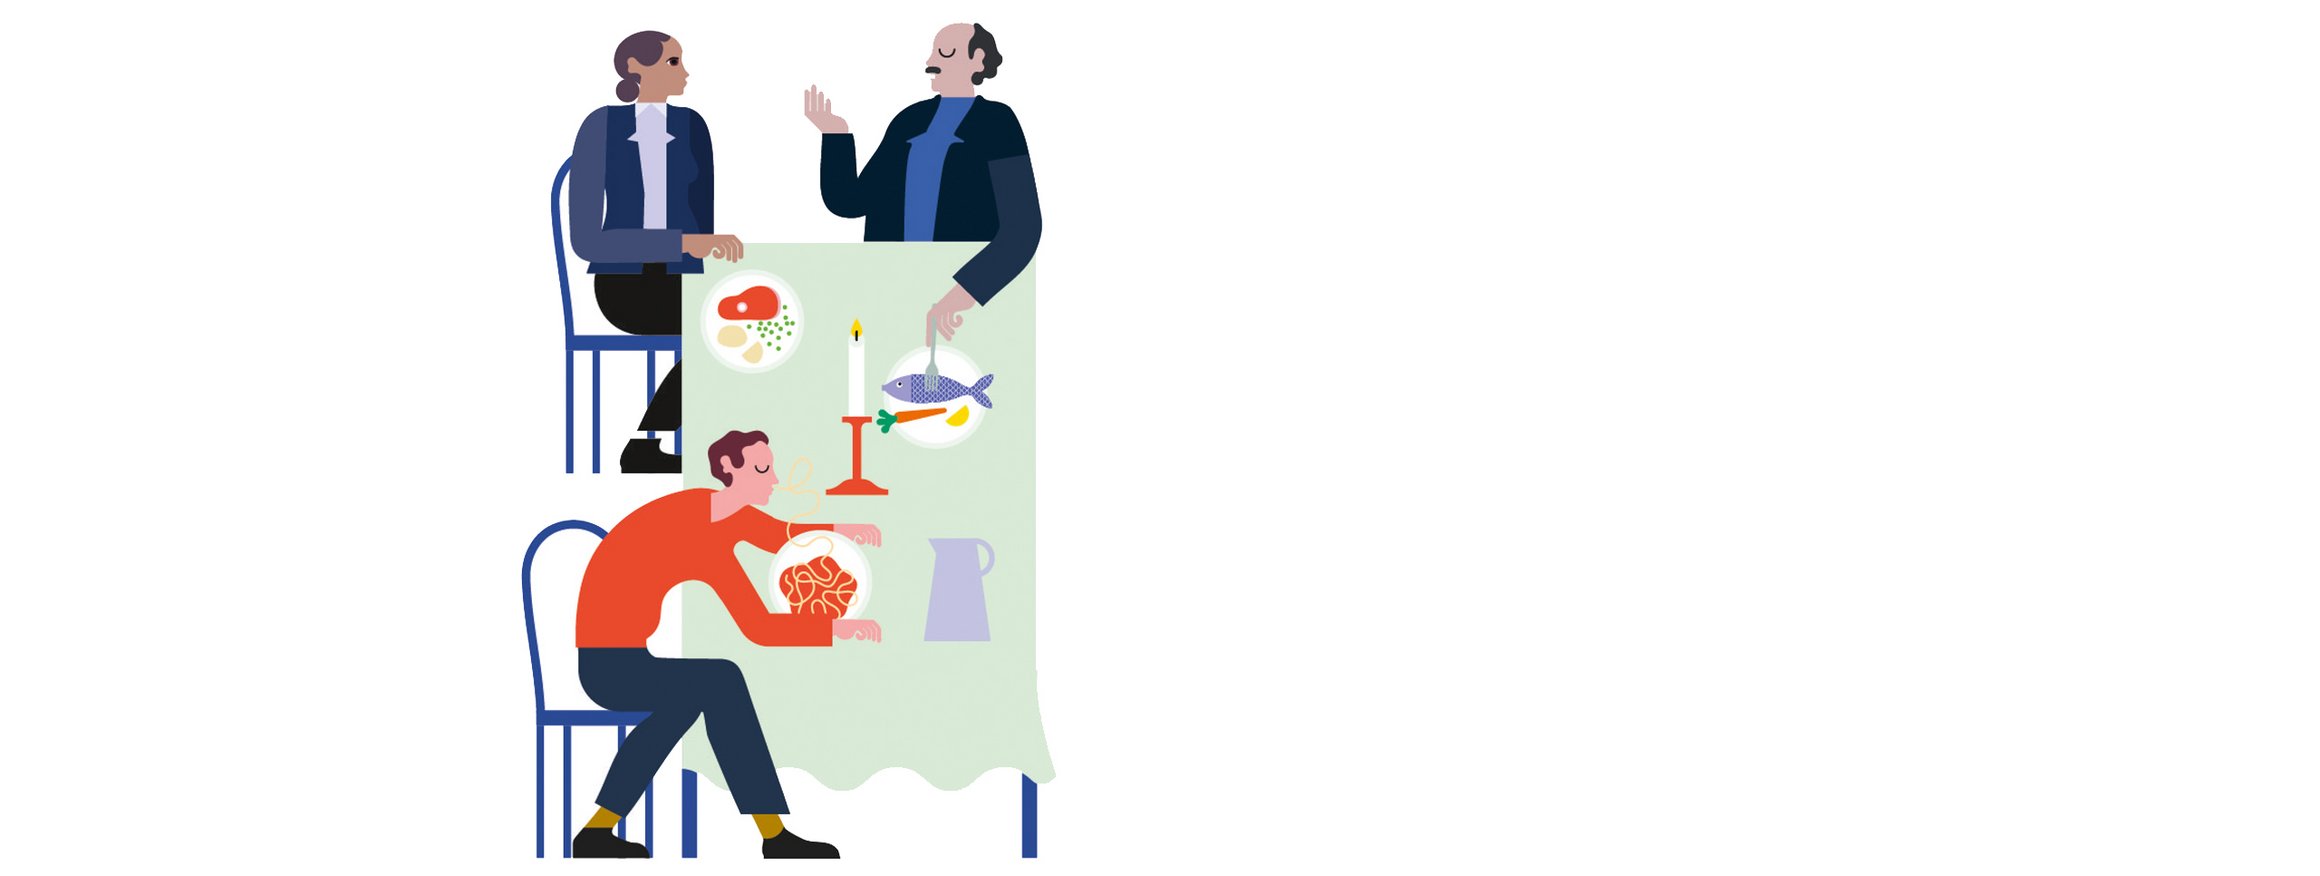 Die Illustration zeigt Personen im Business-Outfit beim gemeinsamen Geschäftsessen im Restaurant